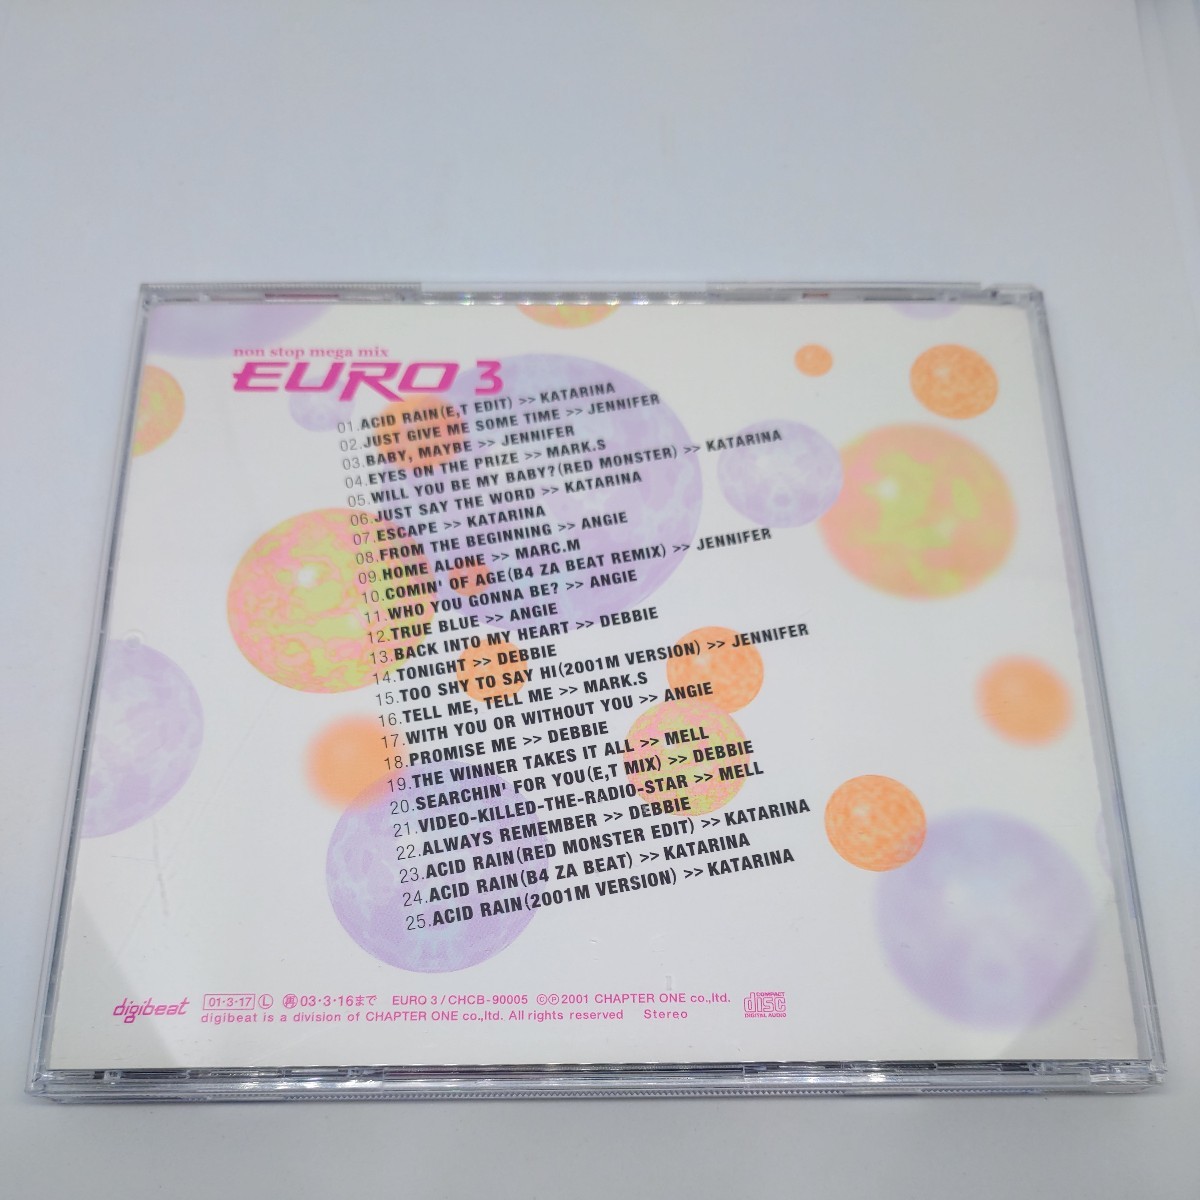 digibeat EURO 3 non stop mega mix ユーロ3 ノンストップ・メガミックス 廃盤CD　WARM WORLD(高瀬一矢 I've sound) MELL参加 ユーロビート_画像2